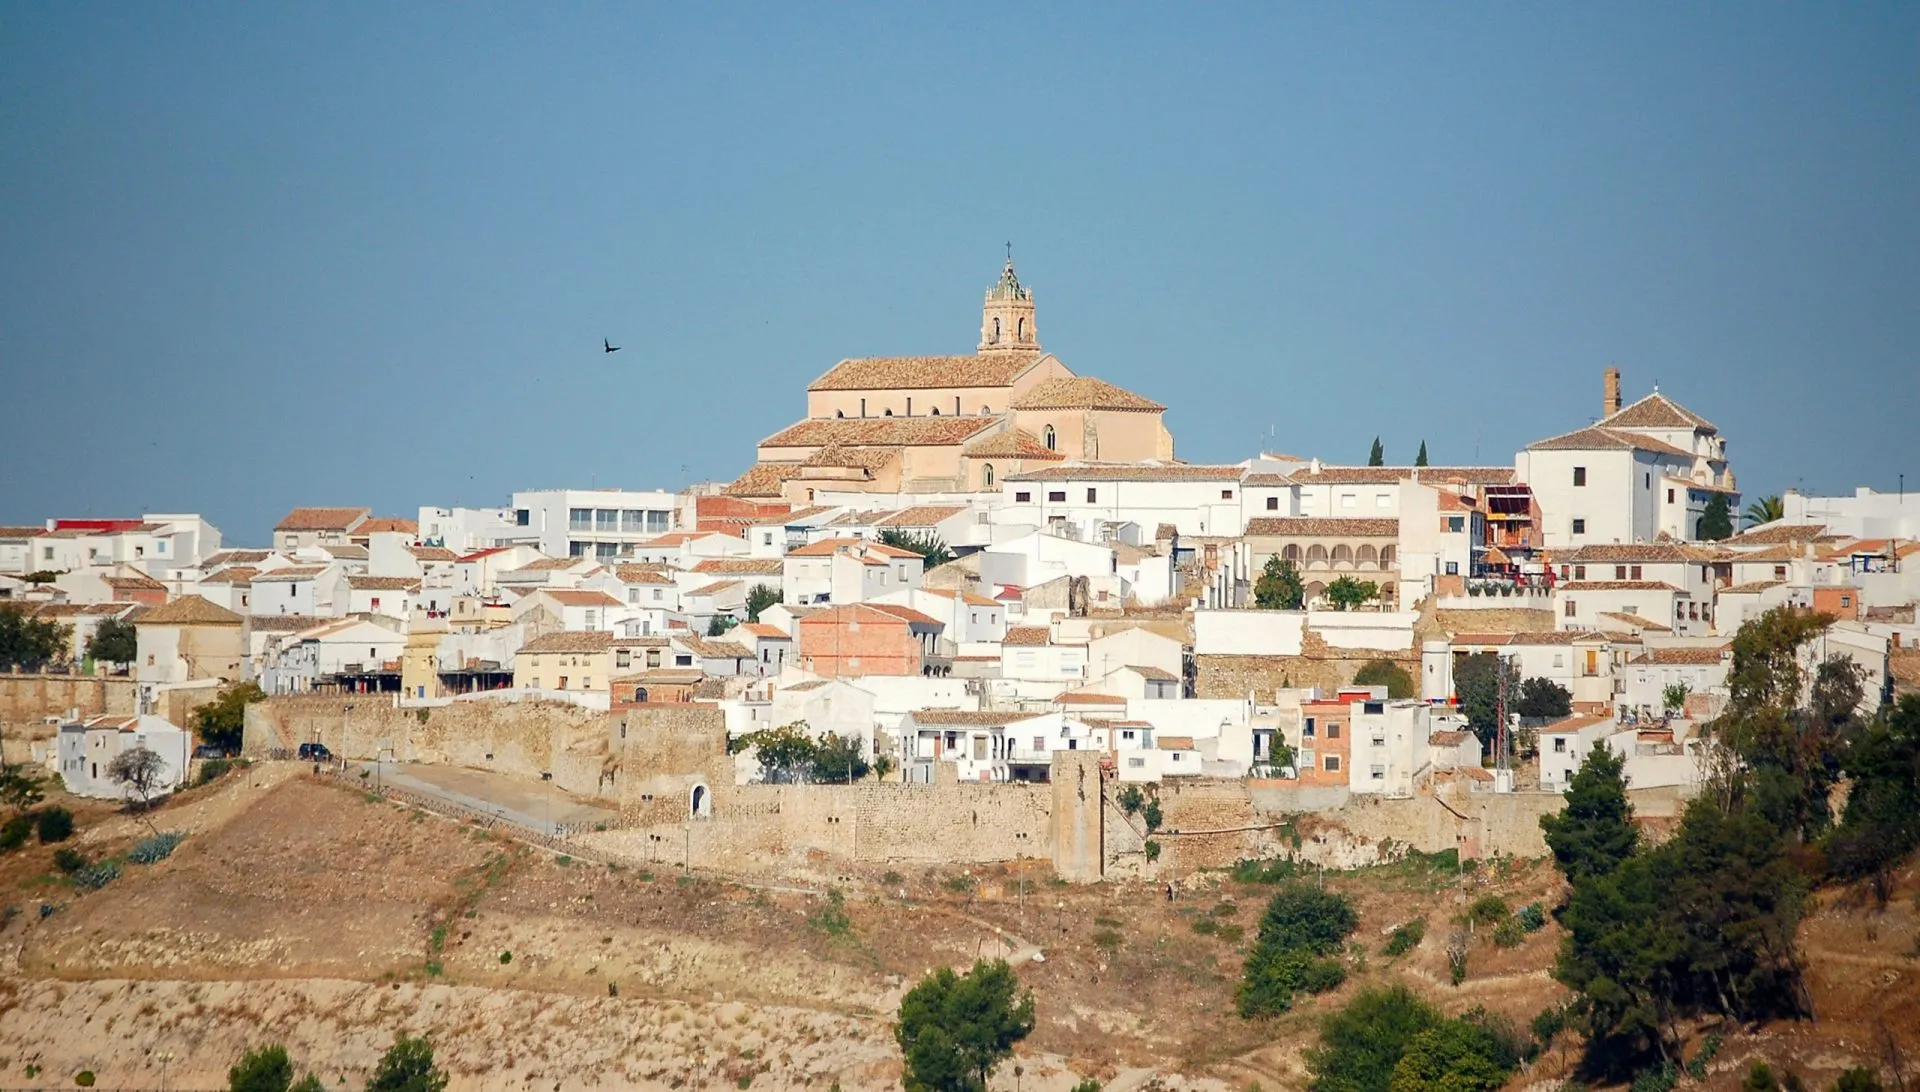 La chiesa di Santa Maria la Mayor tra le case imbiancate e il cielo azzurro - Baena, Andalusia, Spagna